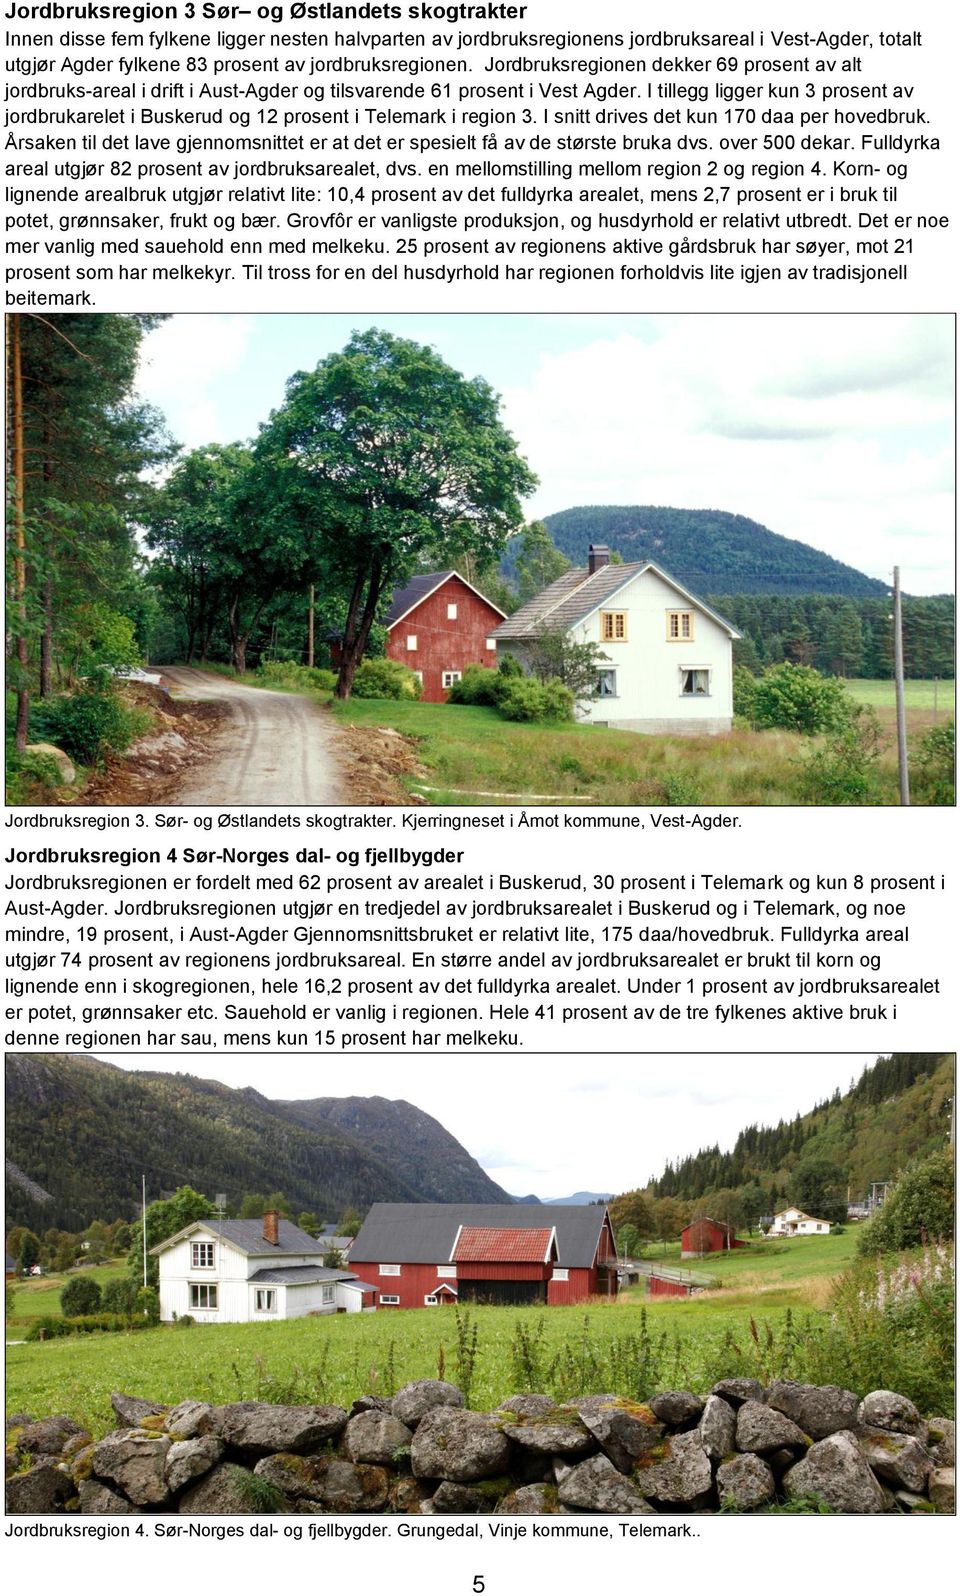 I tillegg ligger kun 3 prosent av jordbrukarelet i Buskerud og 12 prosent i Telemark i region 3. I snitt drives det kun 170 daa per hovedbruk.